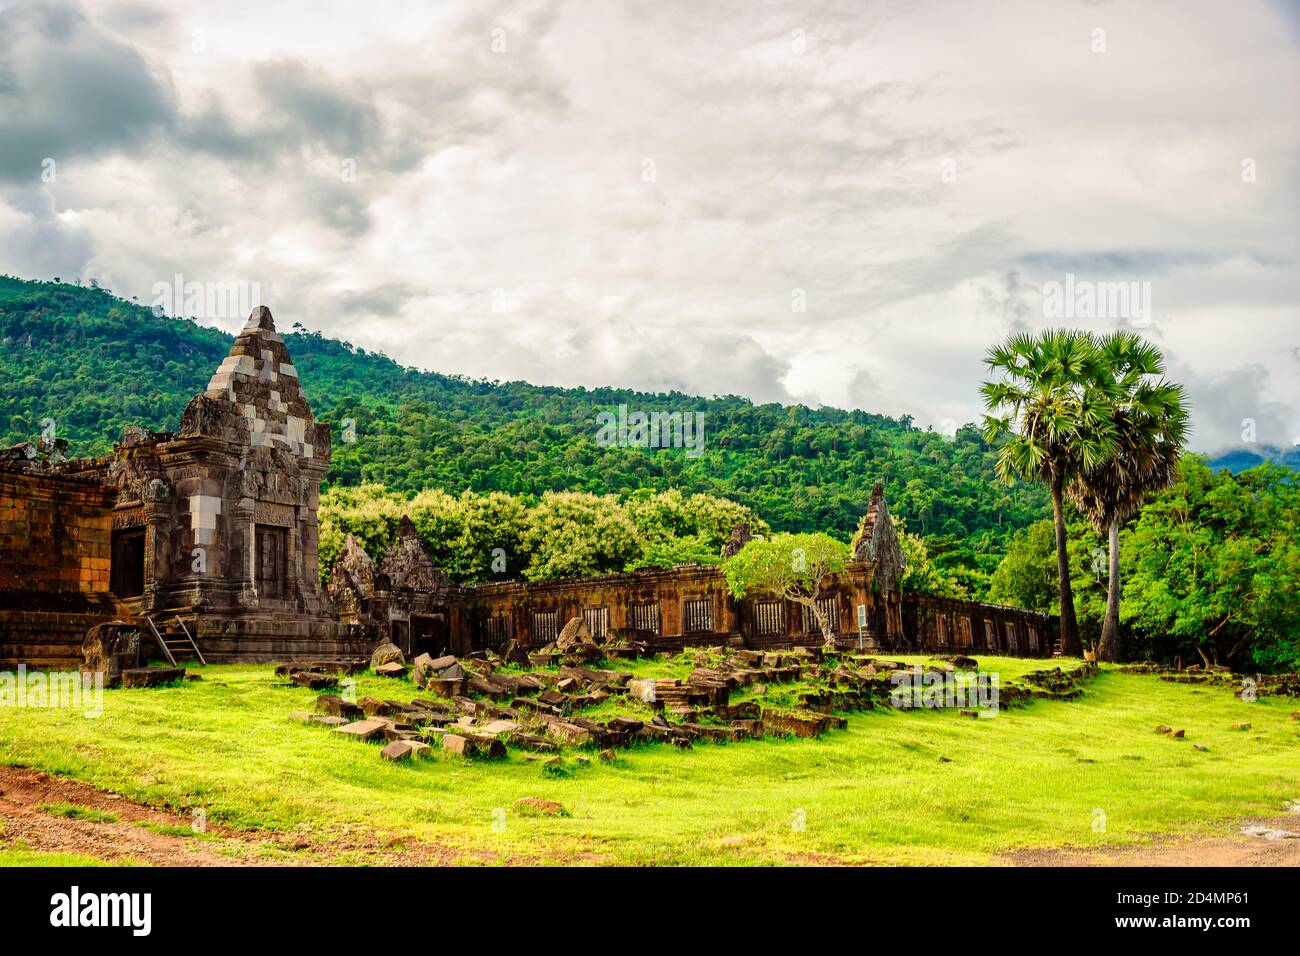 Vat Phou ou Wat Phu est le site classé au patrimoine mondial de l'UNESCO dans la province de Champasak, dans le sud du Laos. Temple hindou Wat Phou situé dans la province de Champasak, au sud Banque D'Images